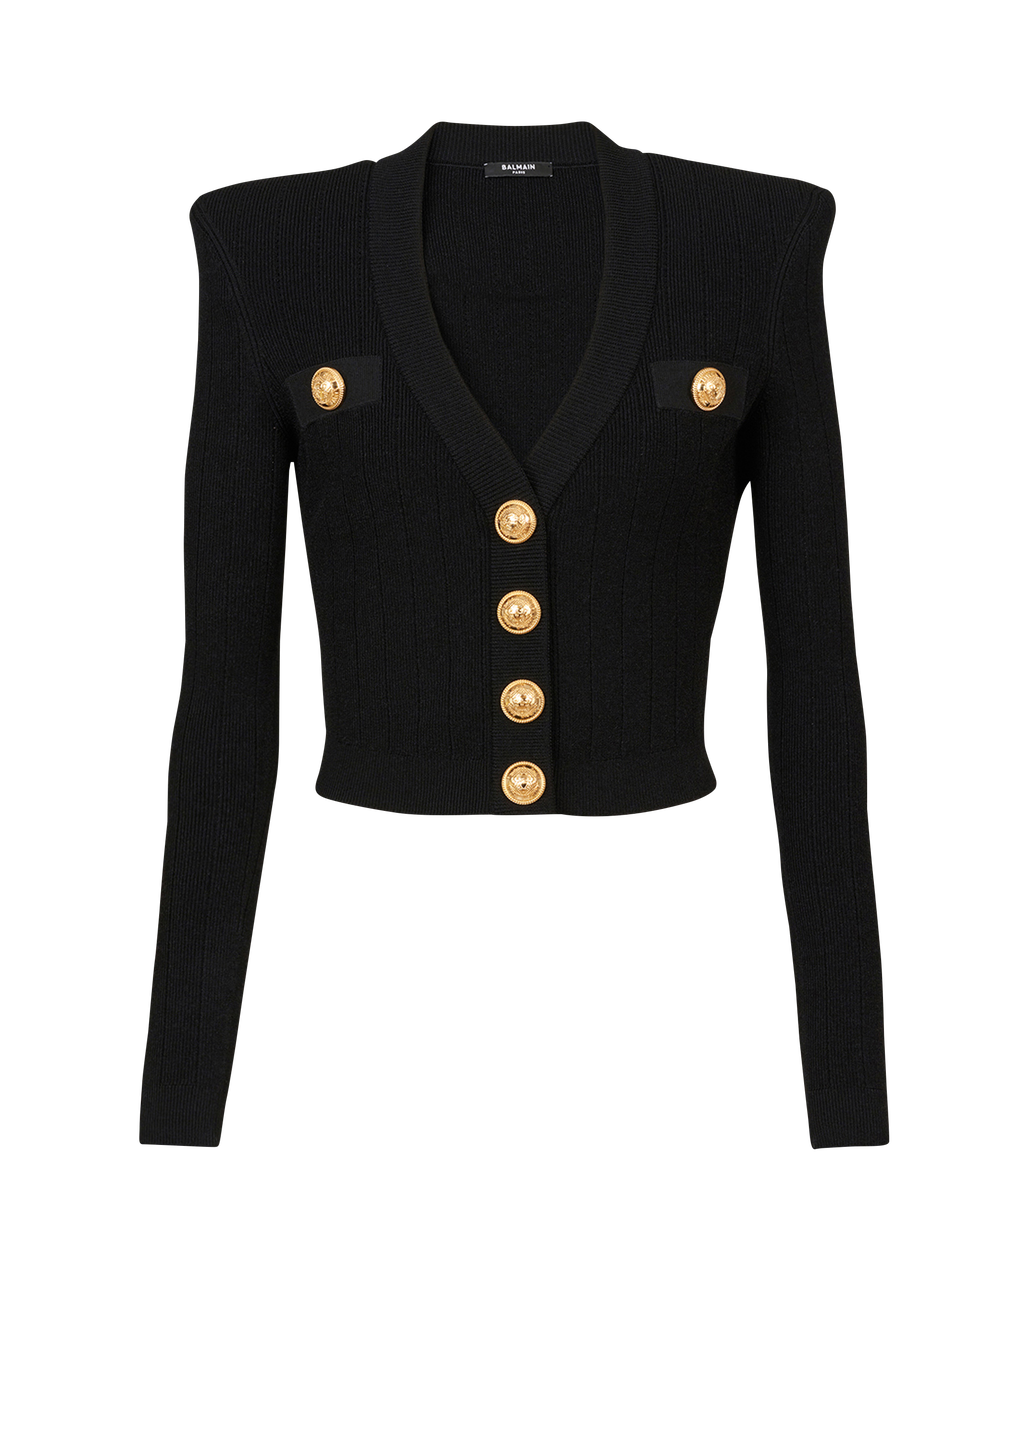 Cardigan corto in maglia eco-design con bottoni dorati, nero, hi-res